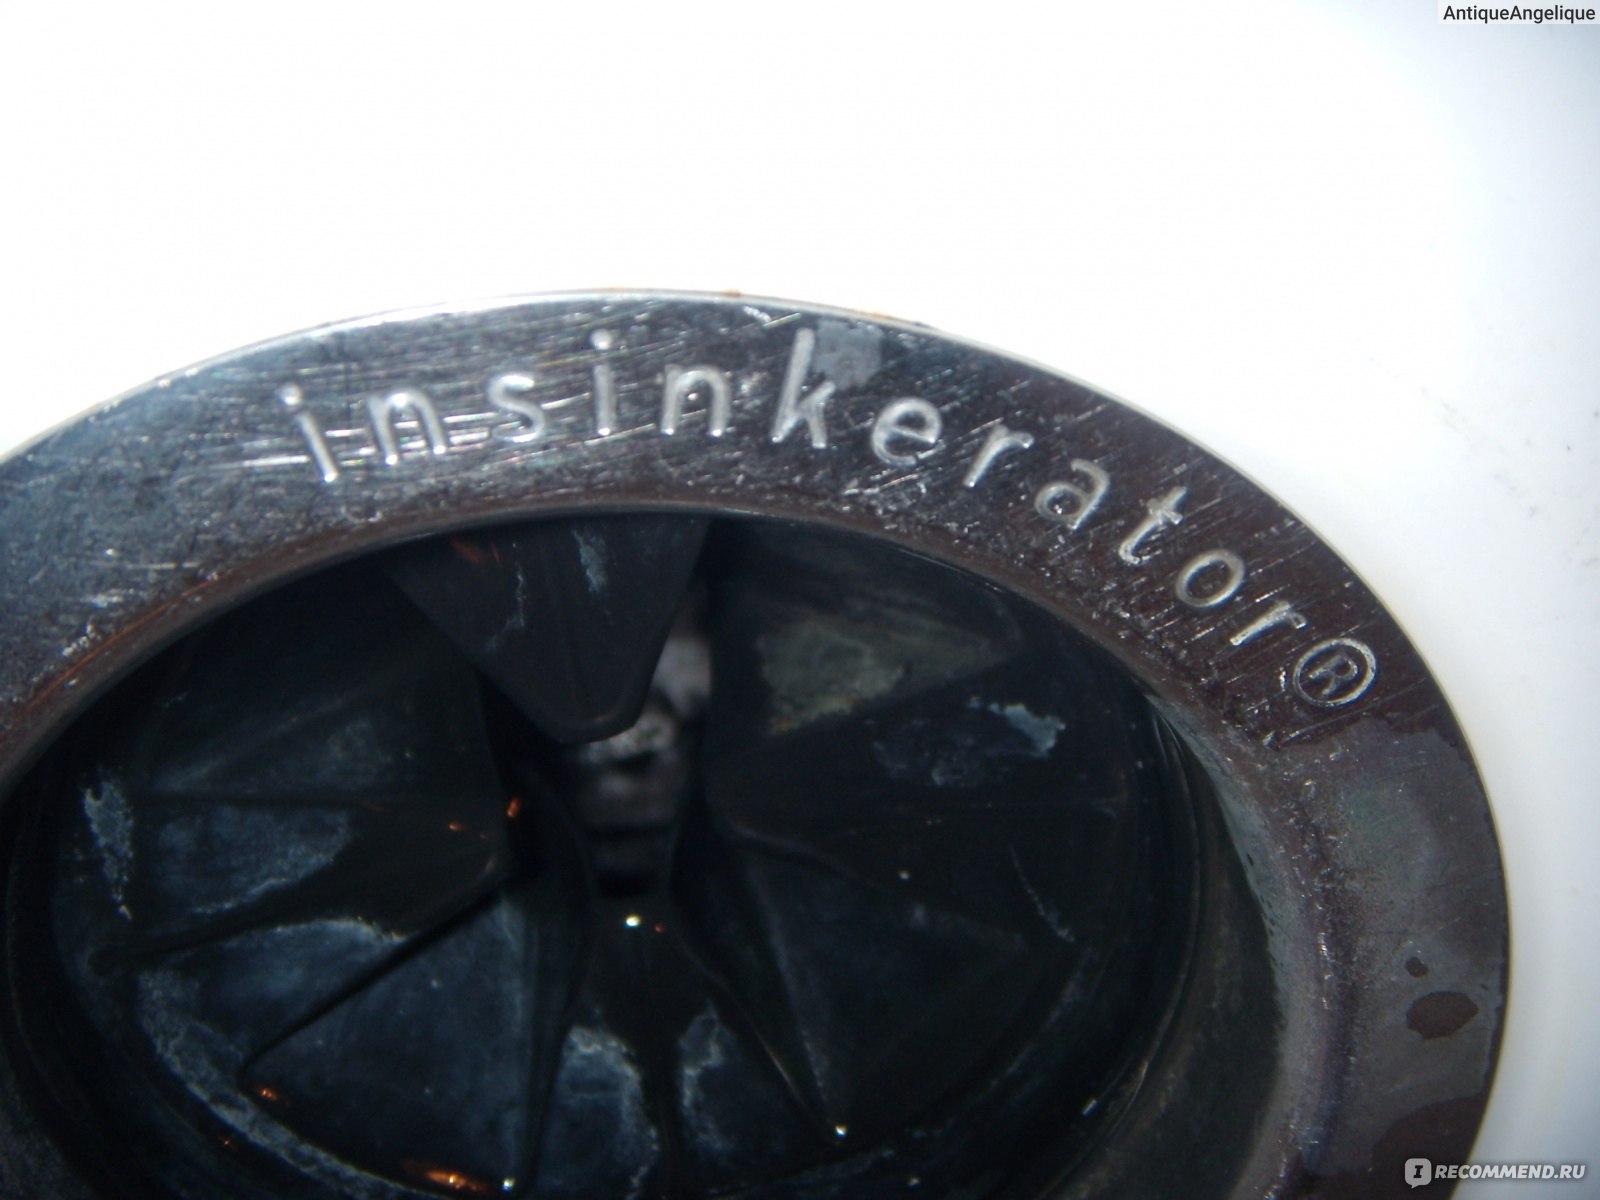 Измельчитель пищевых отходов (диспоузер) Insinkerator In Sink Erator 65 фото